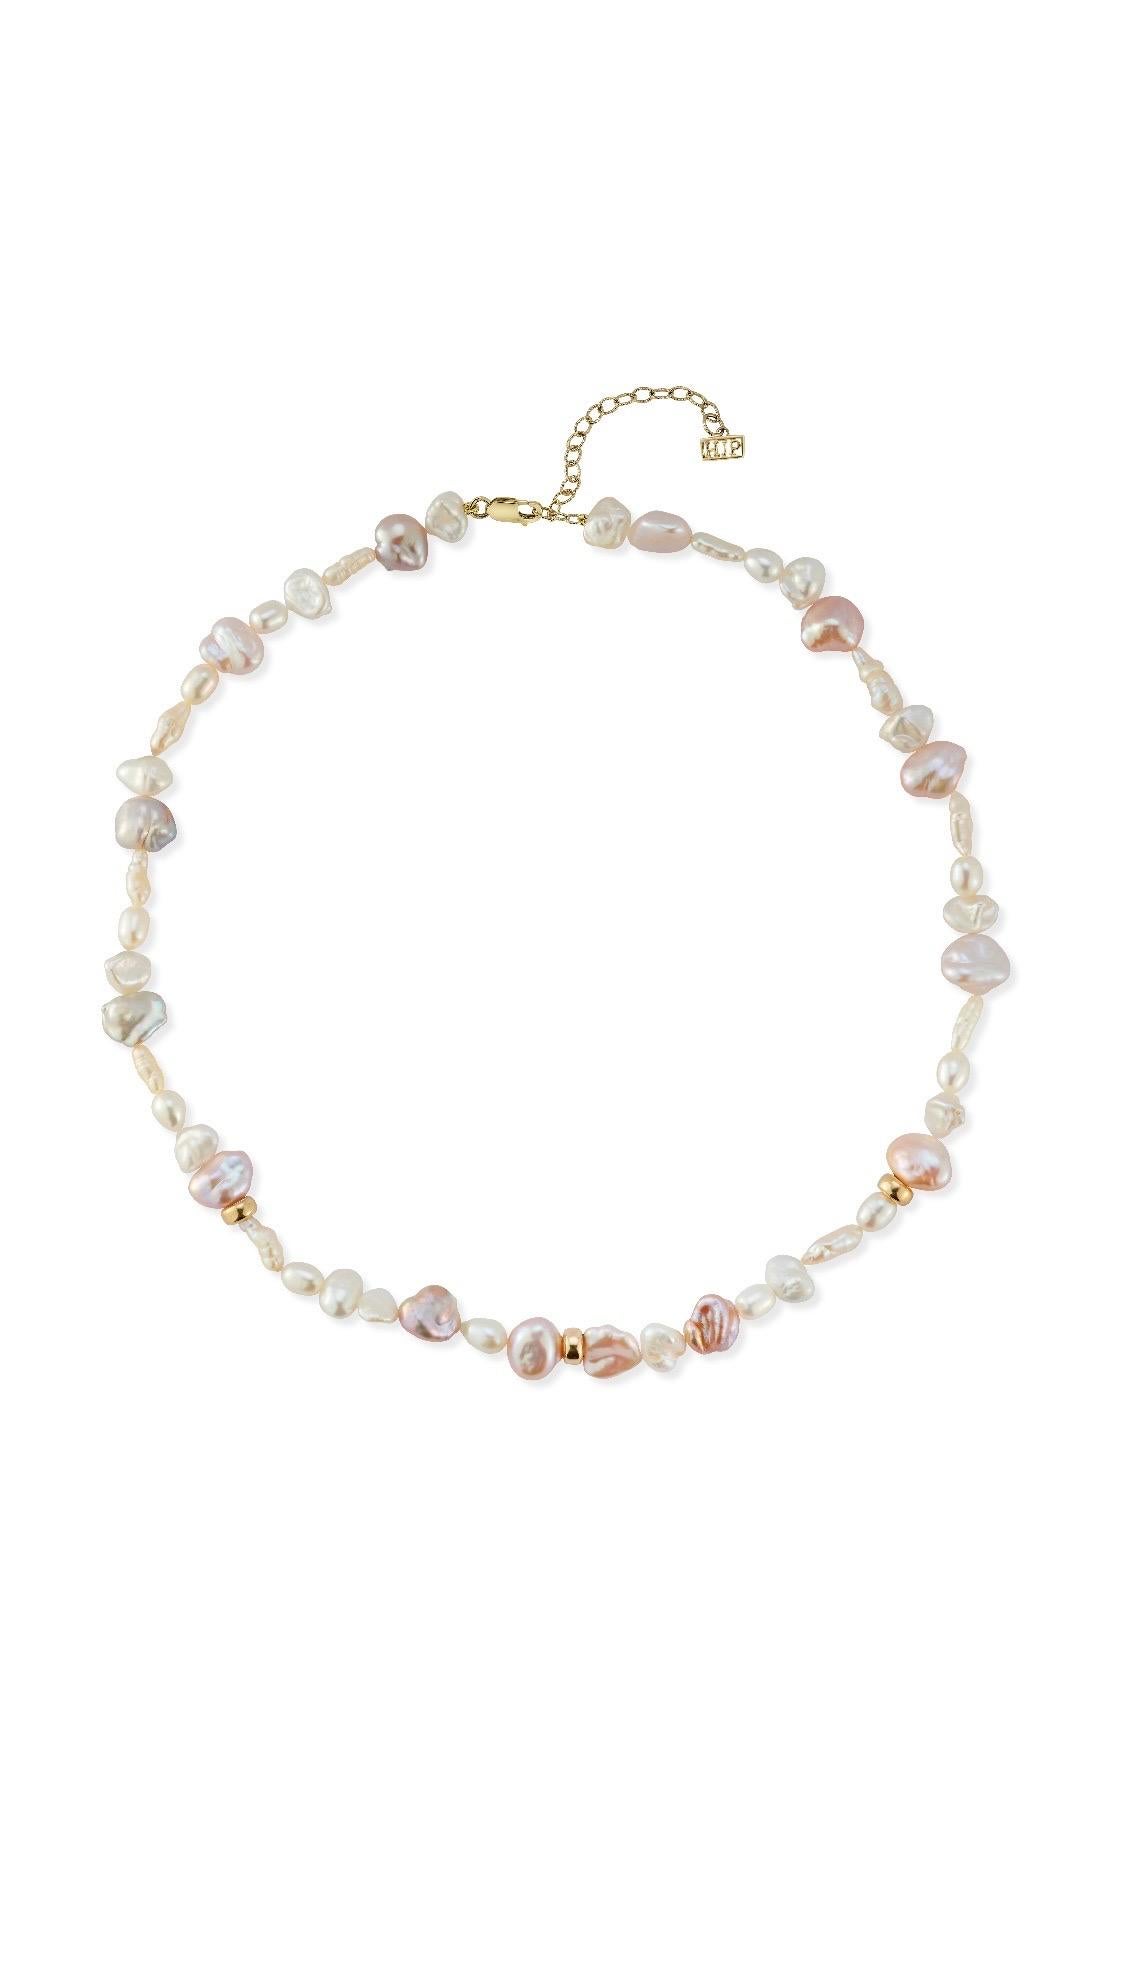 Collier ras-de-cou en perles mixtes, avec des perles baroques, keshi et ovales. 

Il est idéal à porter en tour de cou pour mettre en valeur les différentes formes et tonalités de perles. Il est réglable jusqu'à 16